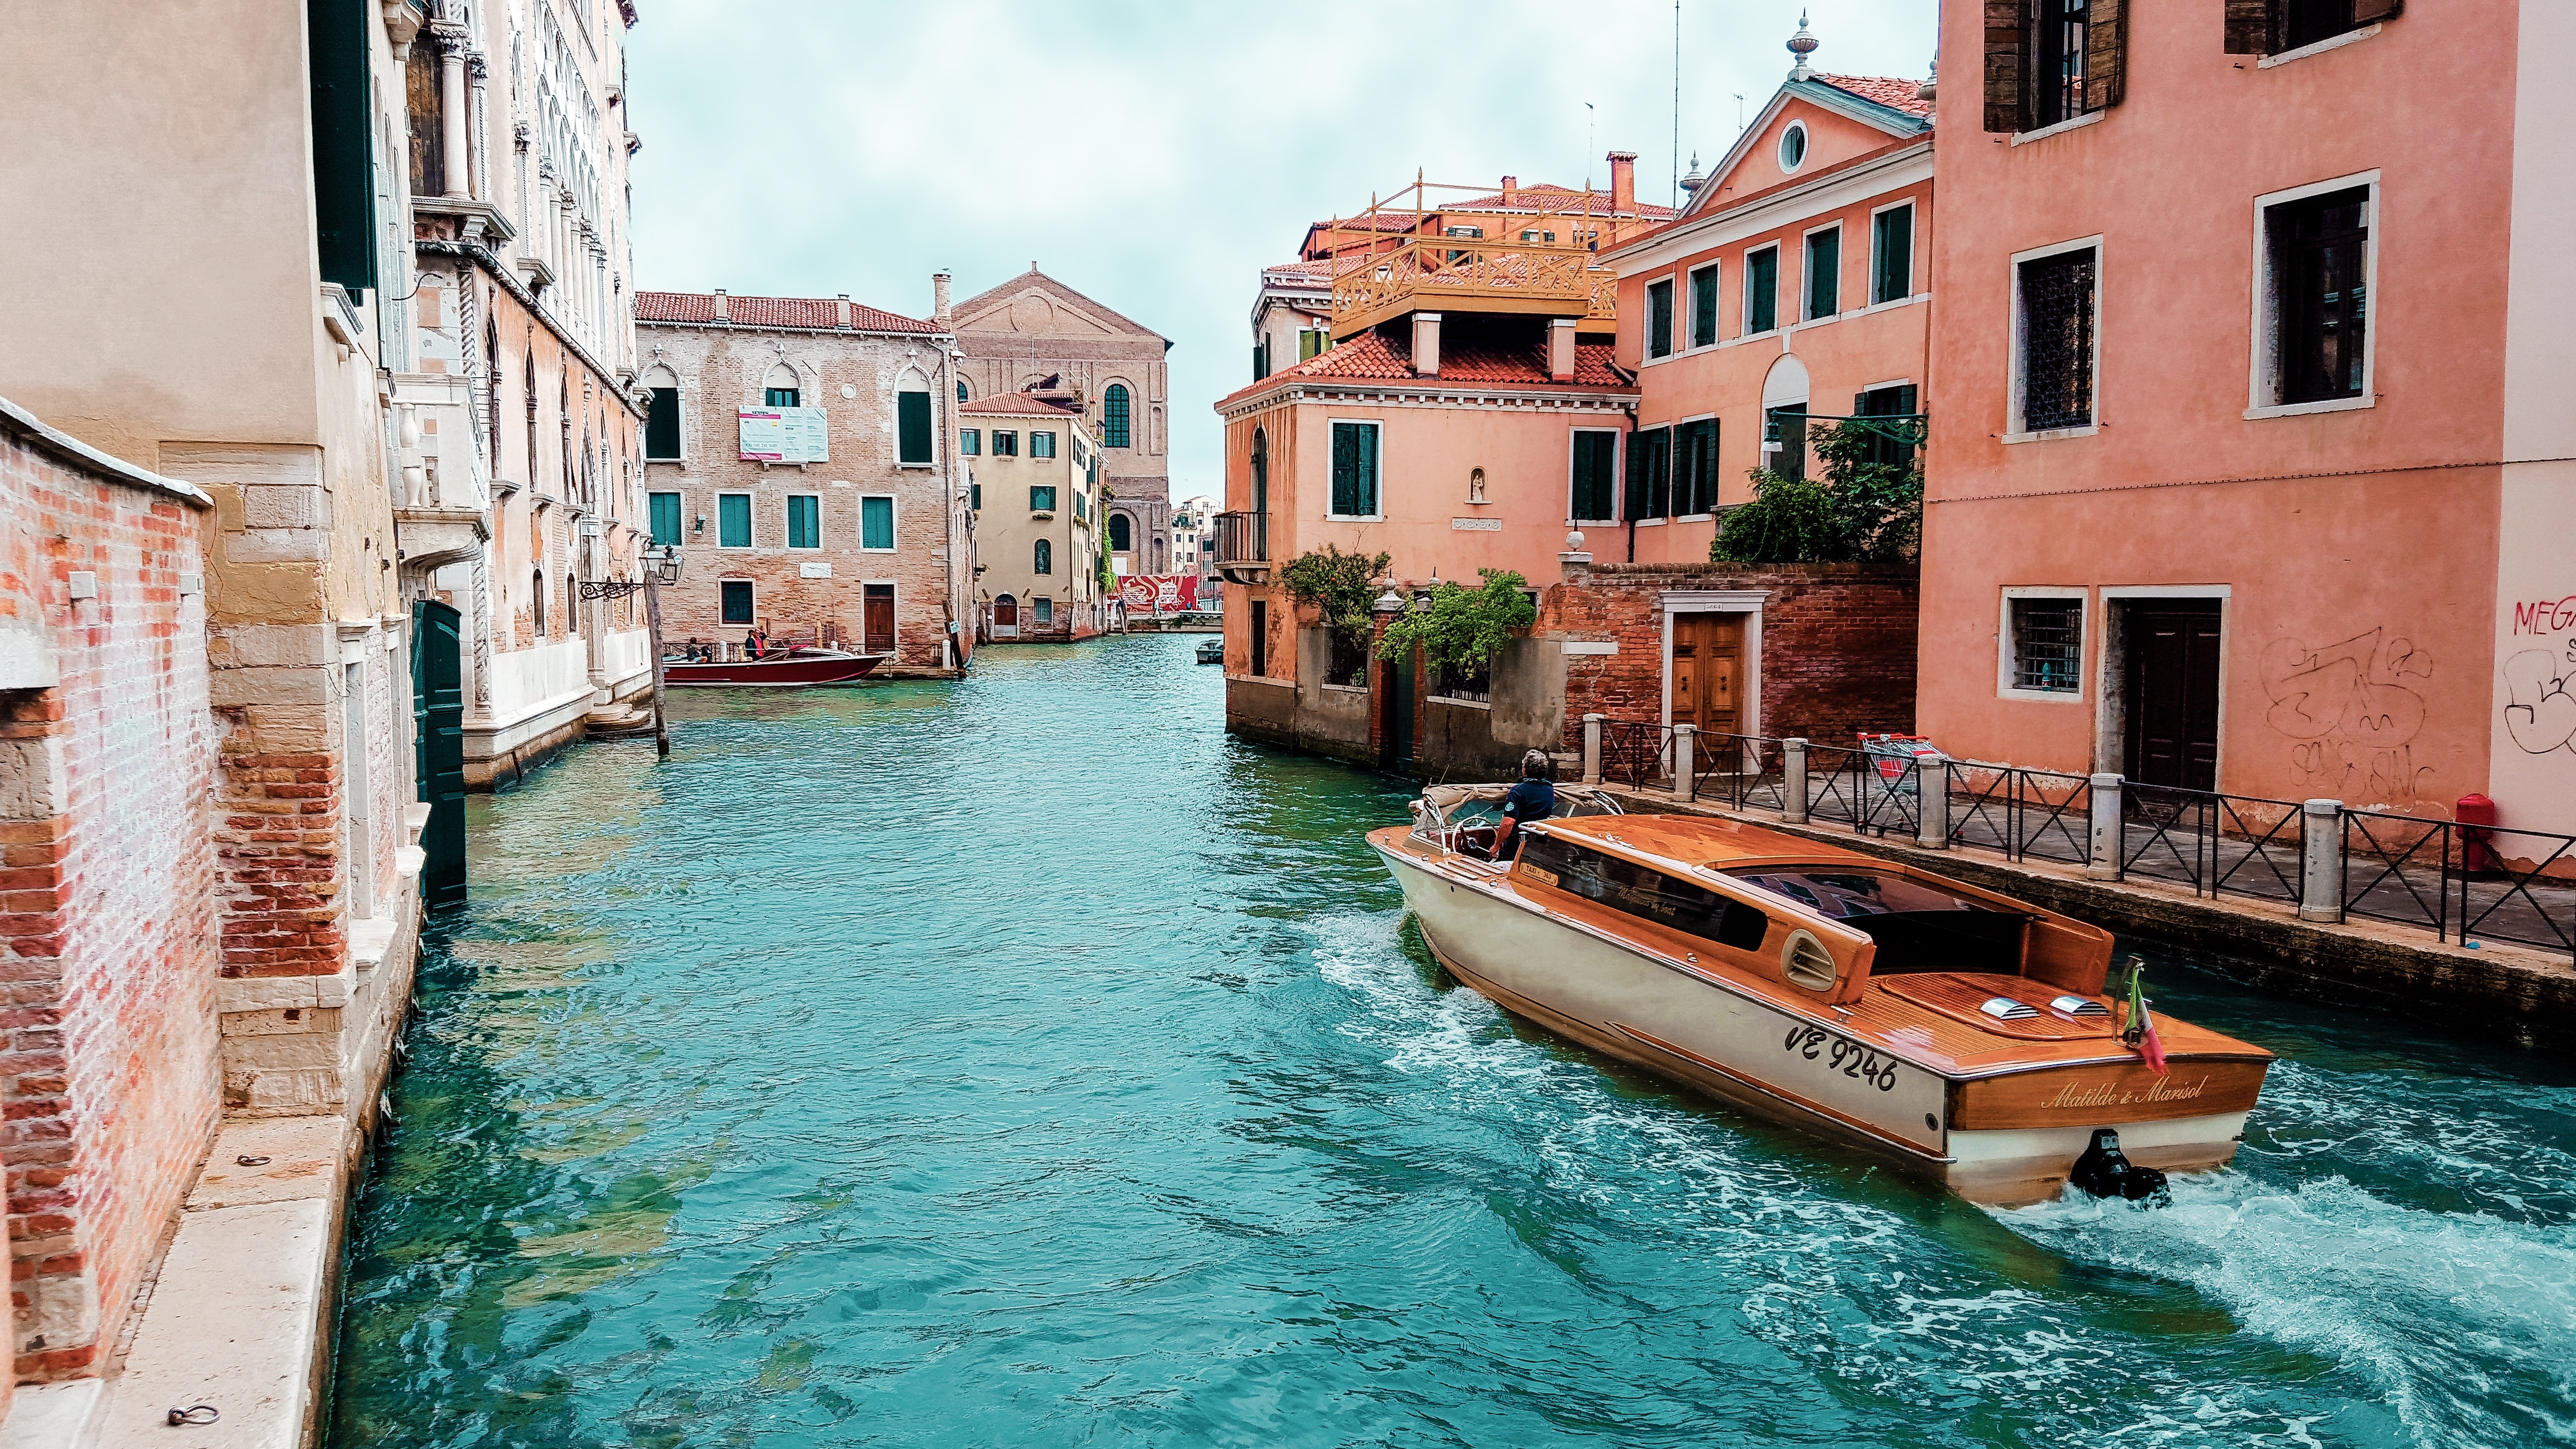 Zuge Wien-Venedig: Venedig, seine charakteristische Architektur und der Kanal